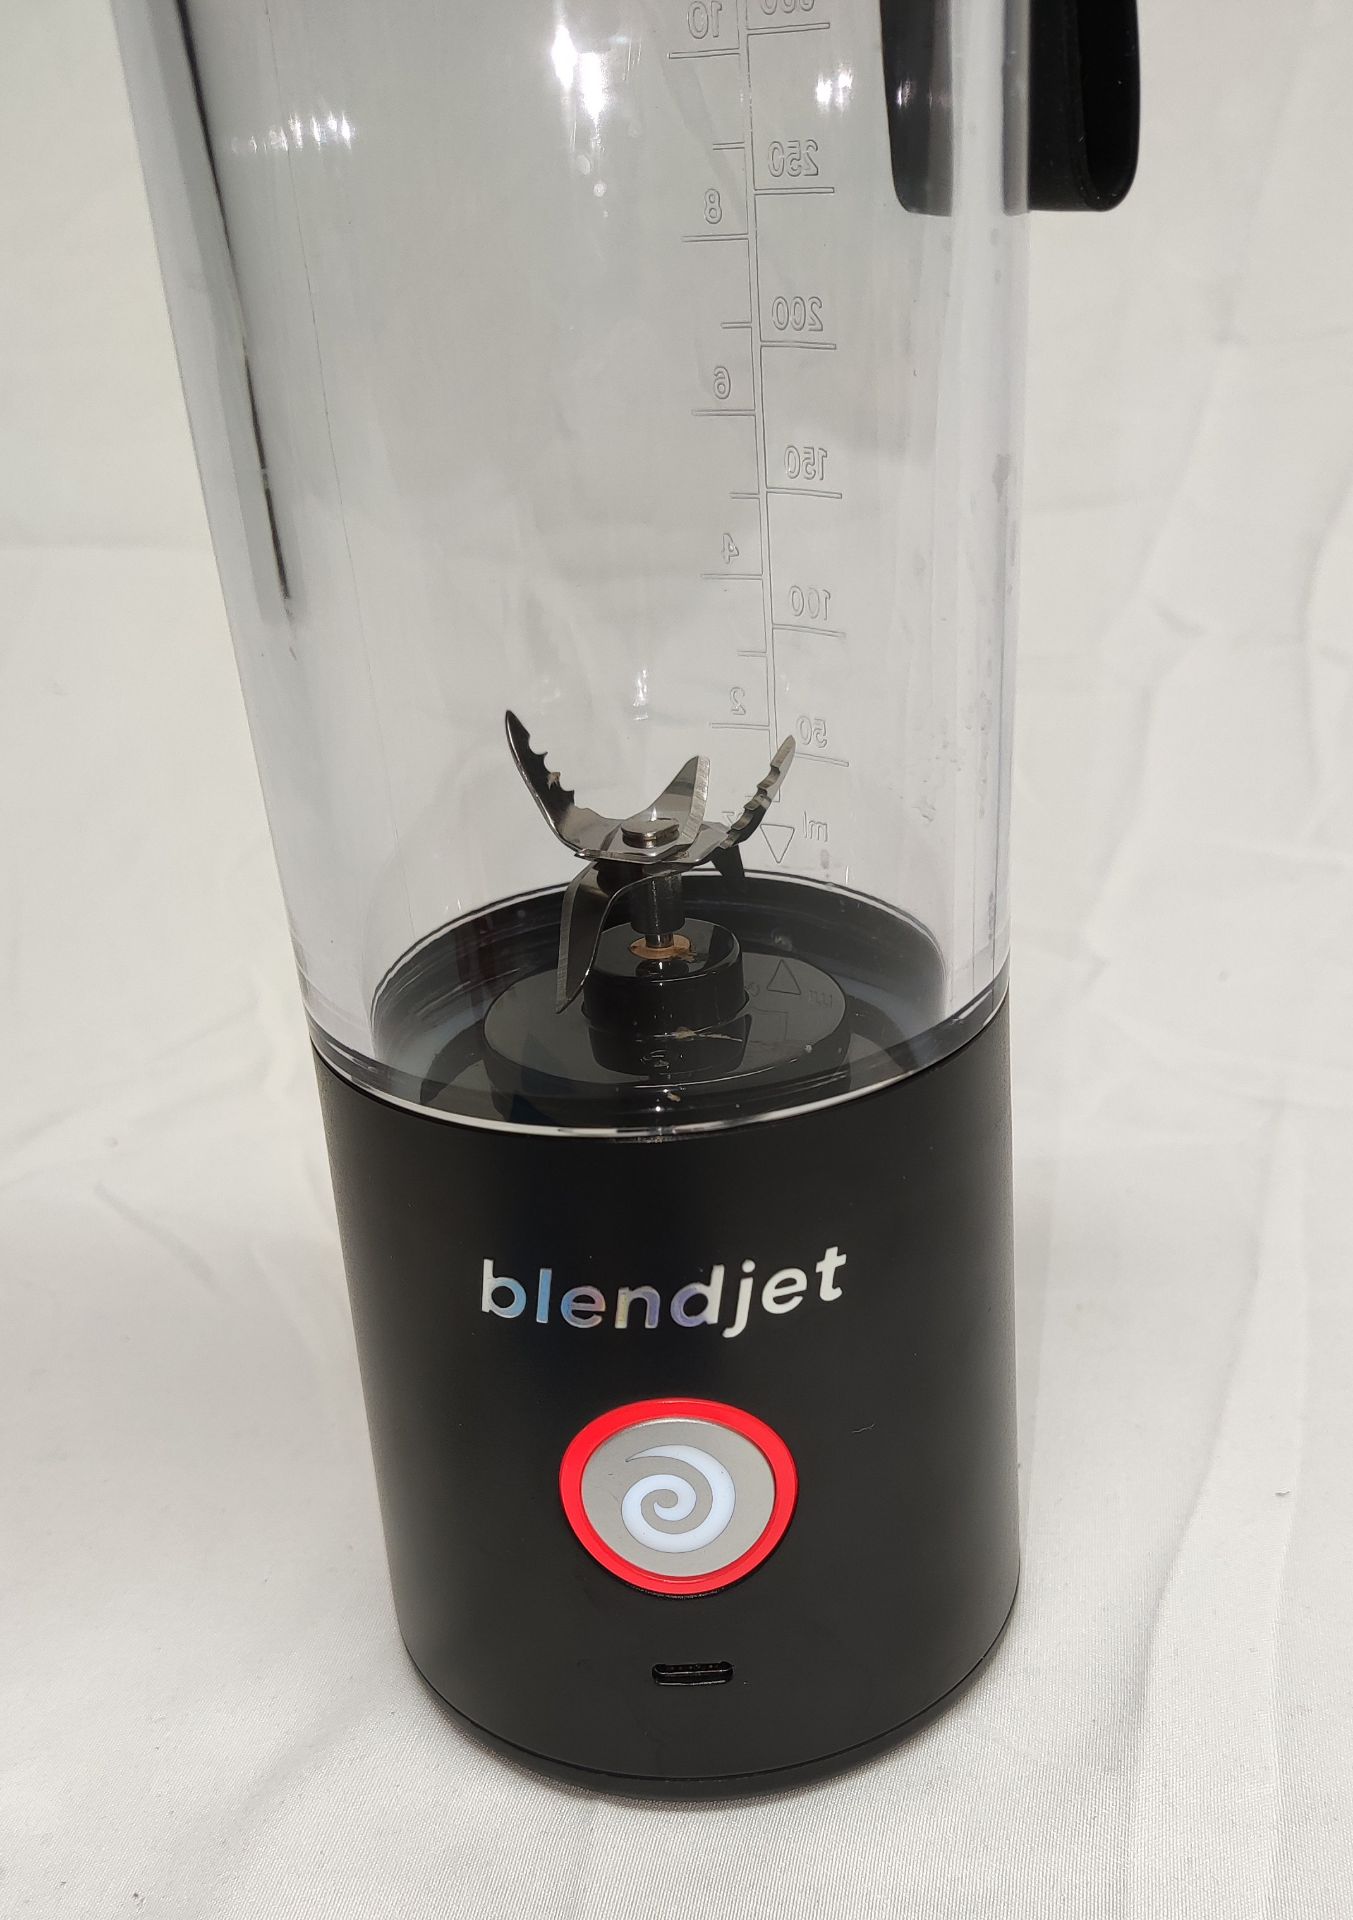 1 x BLENDJET Portable Blender (Blendjet 2) In Black - Original RRP £49.99 - Ref: 7097506/HJL376/ - Image 4 of 14